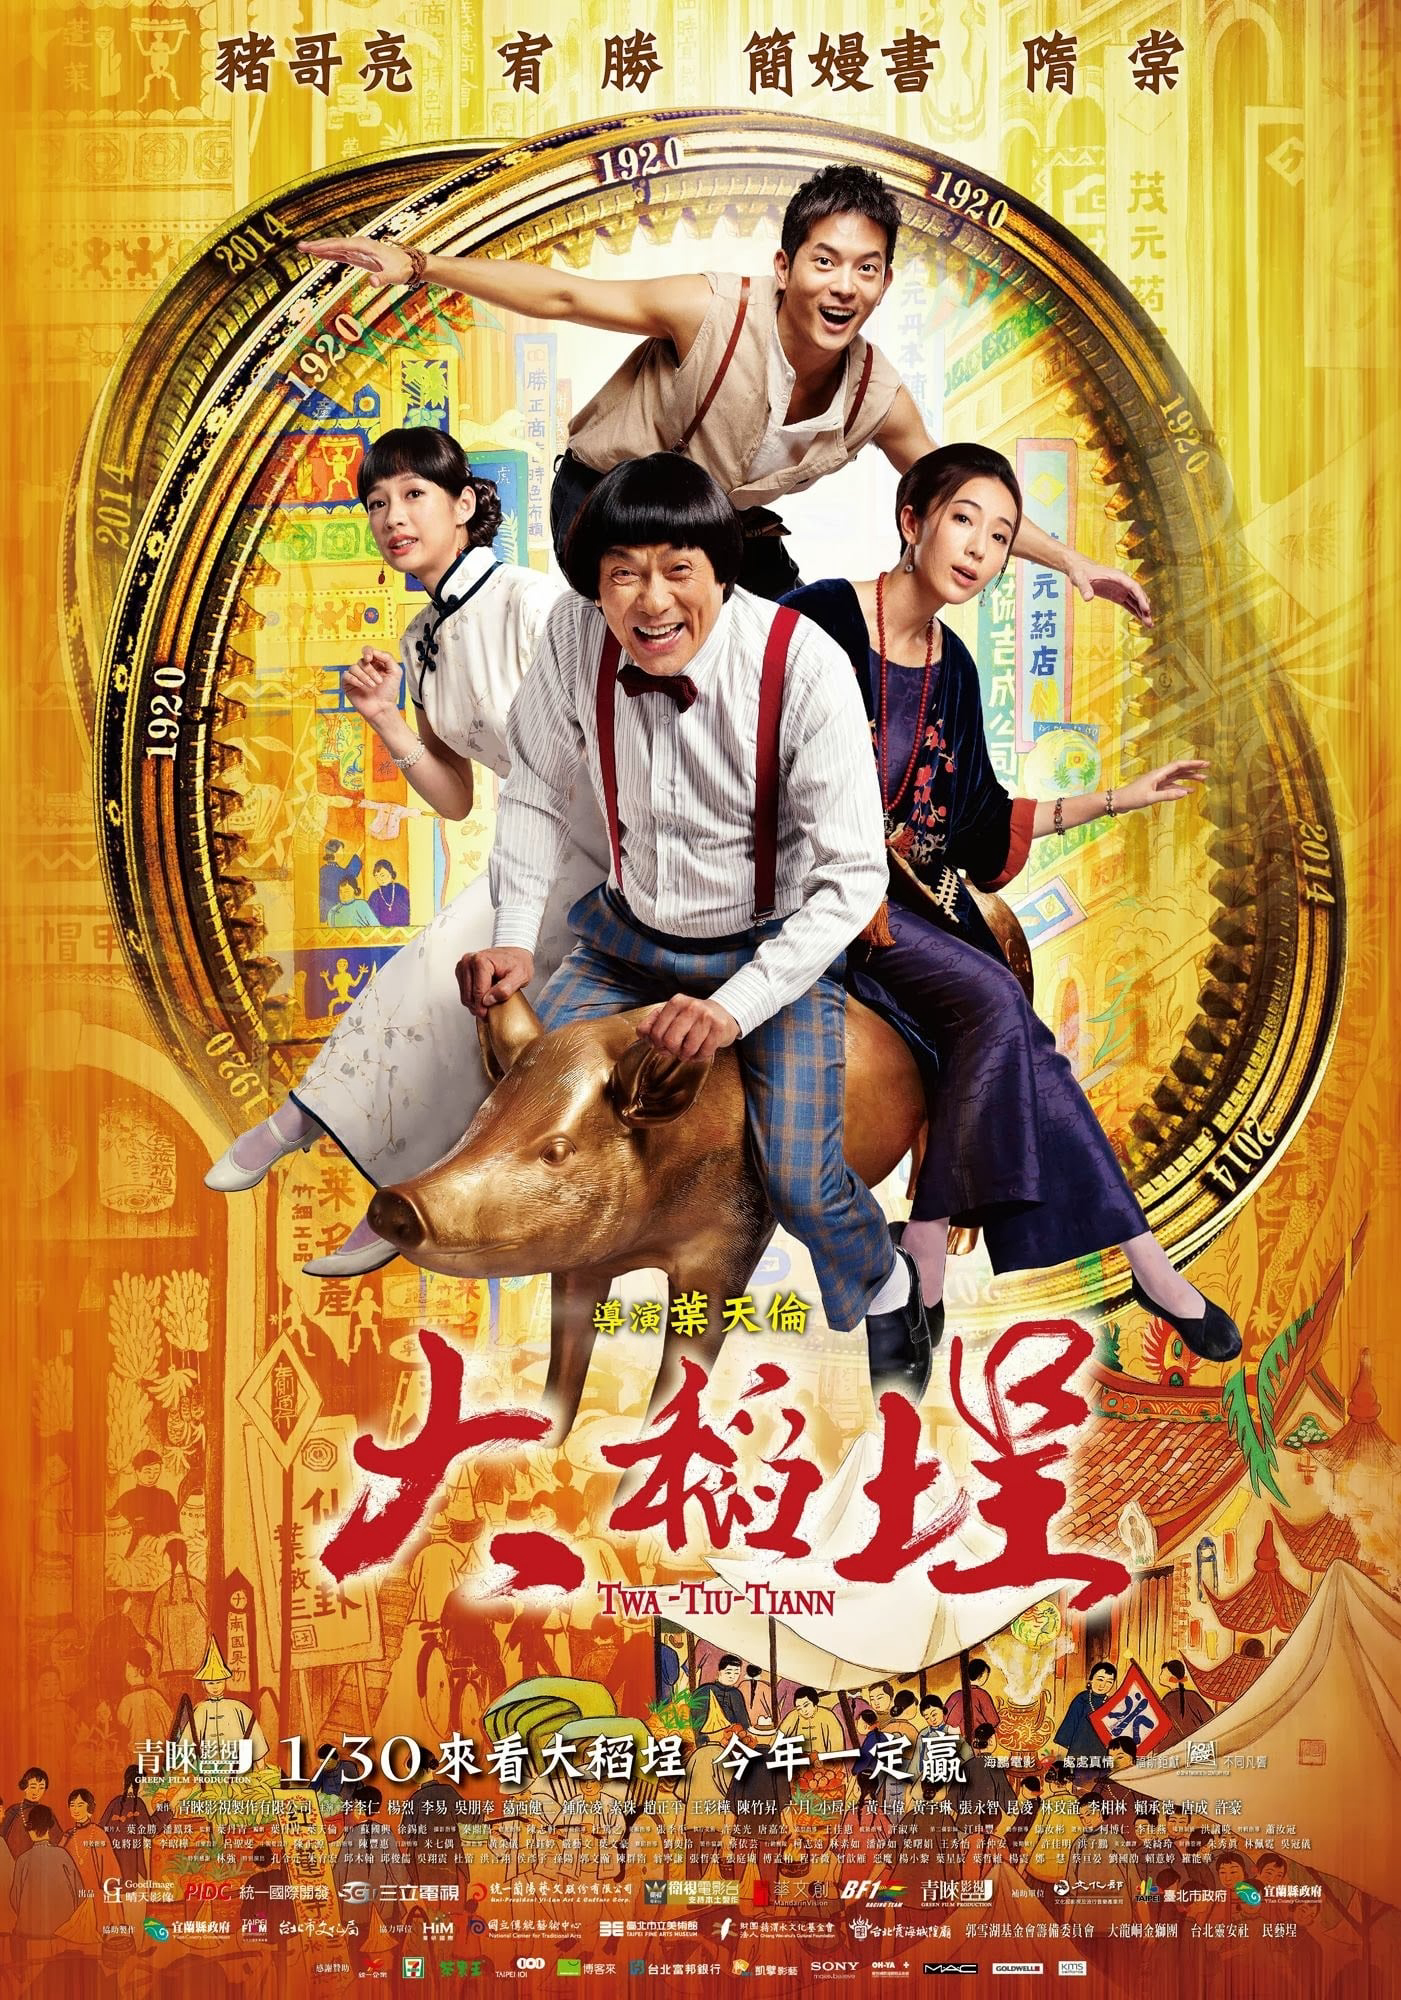 Poster Phim Chàng Trai Đến Từ Tương Lai (Twa-Tiu-Tiann)